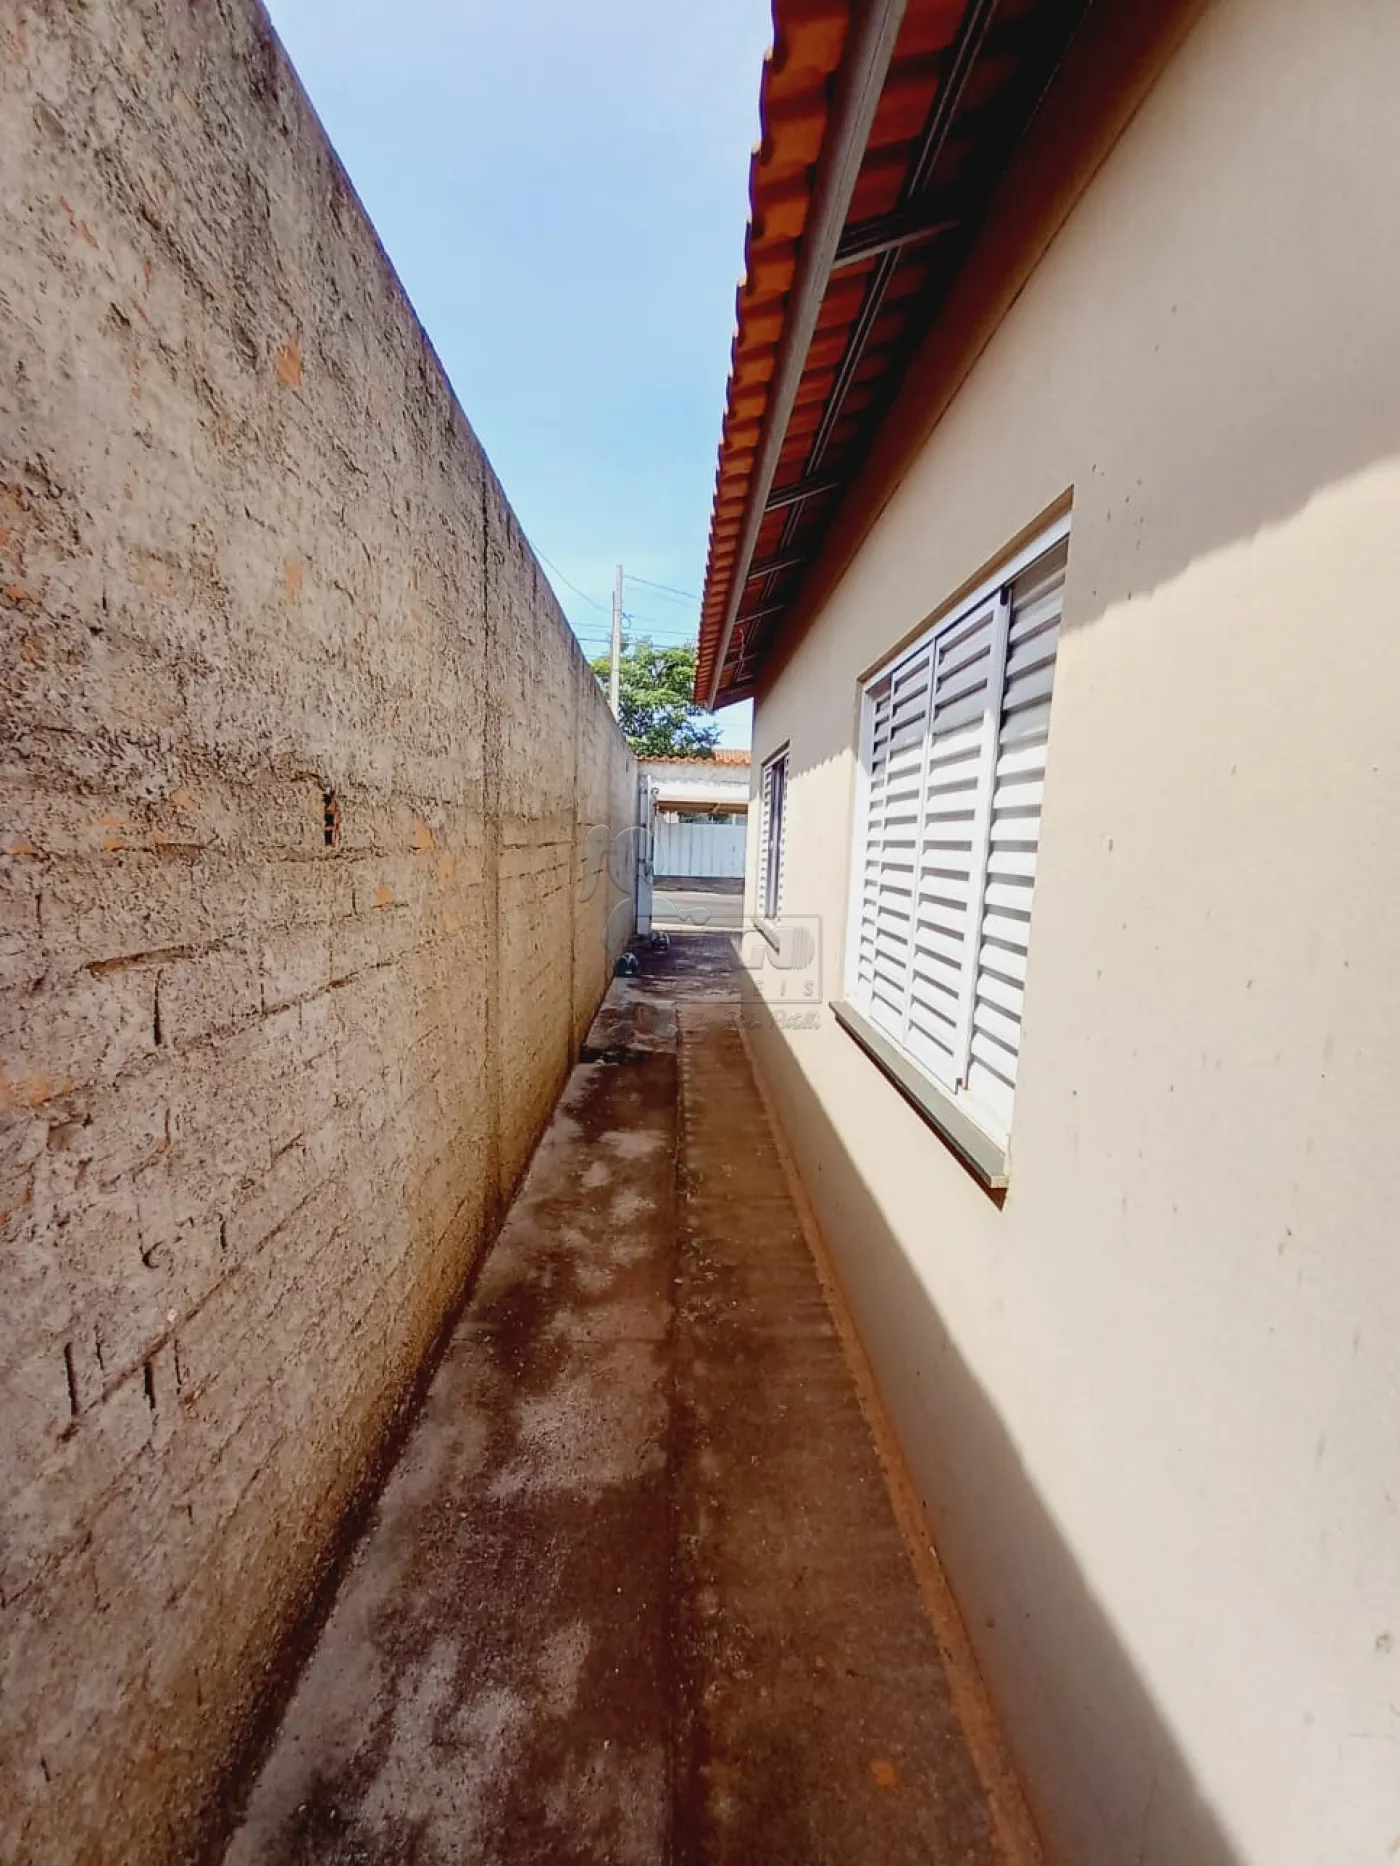 Alugar Casas / Padrão em Ribeirão Preto R$ 1.000,00 - Foto 14